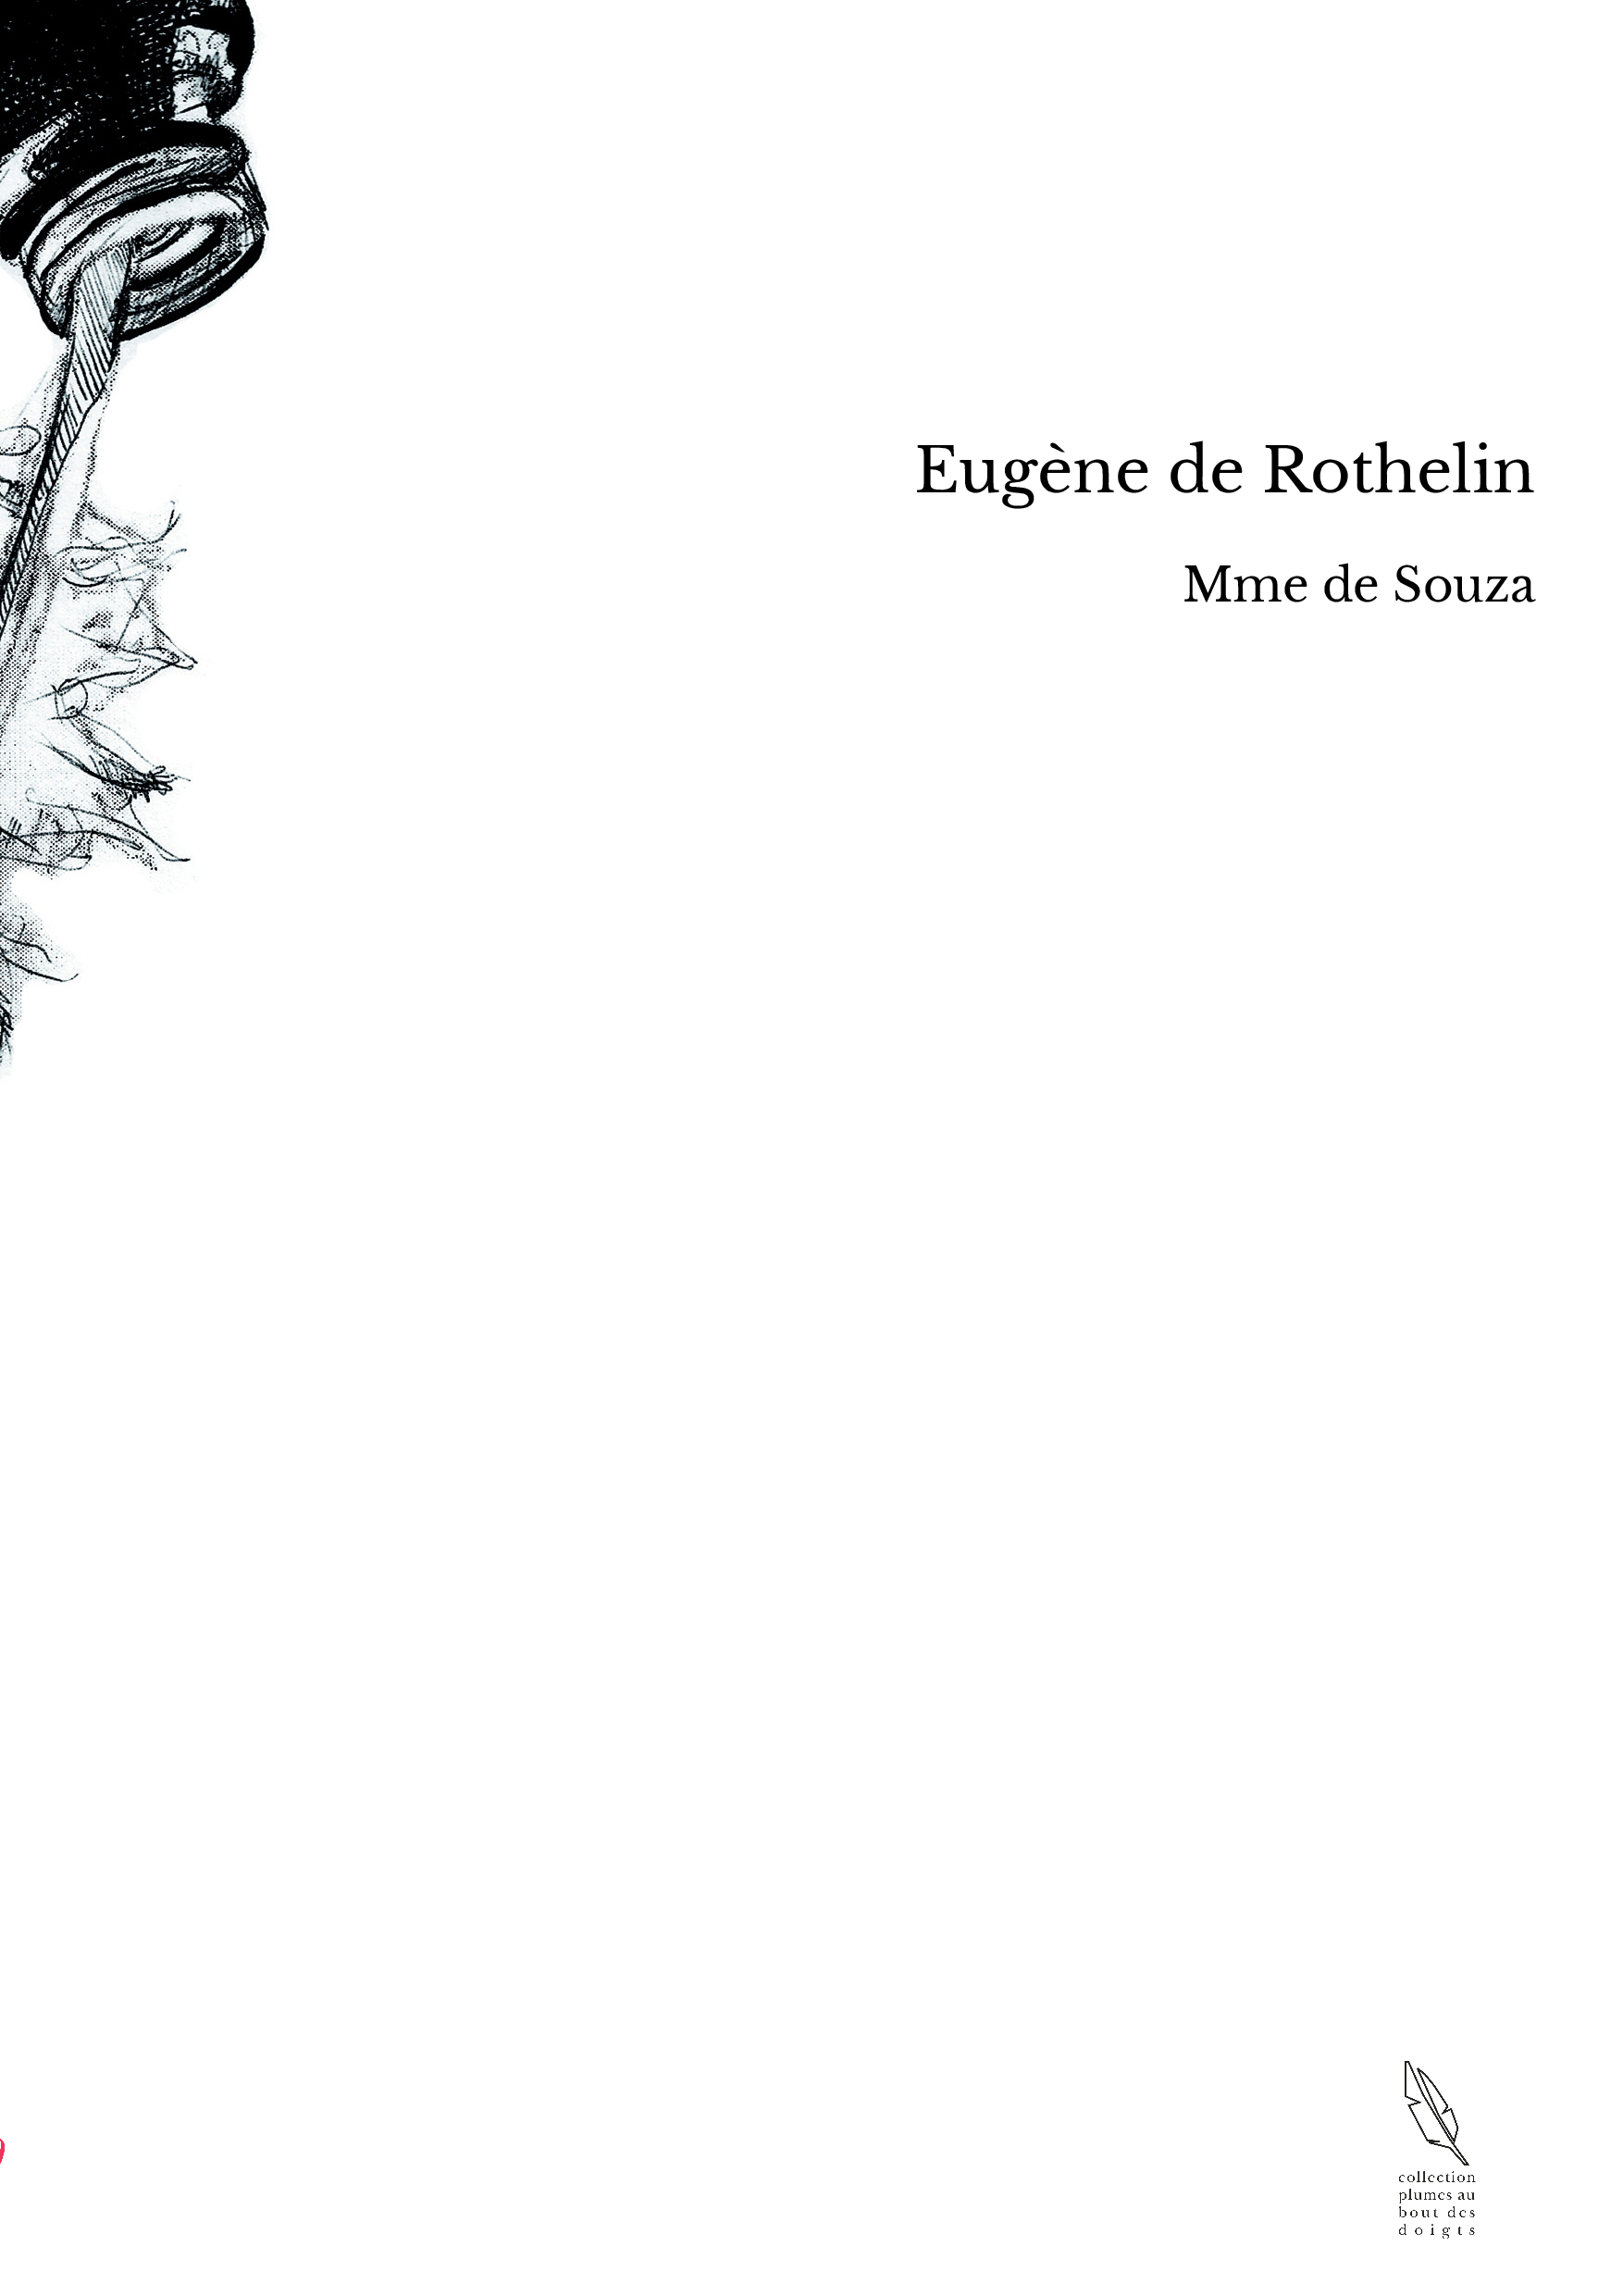 Eugène de Rothelin